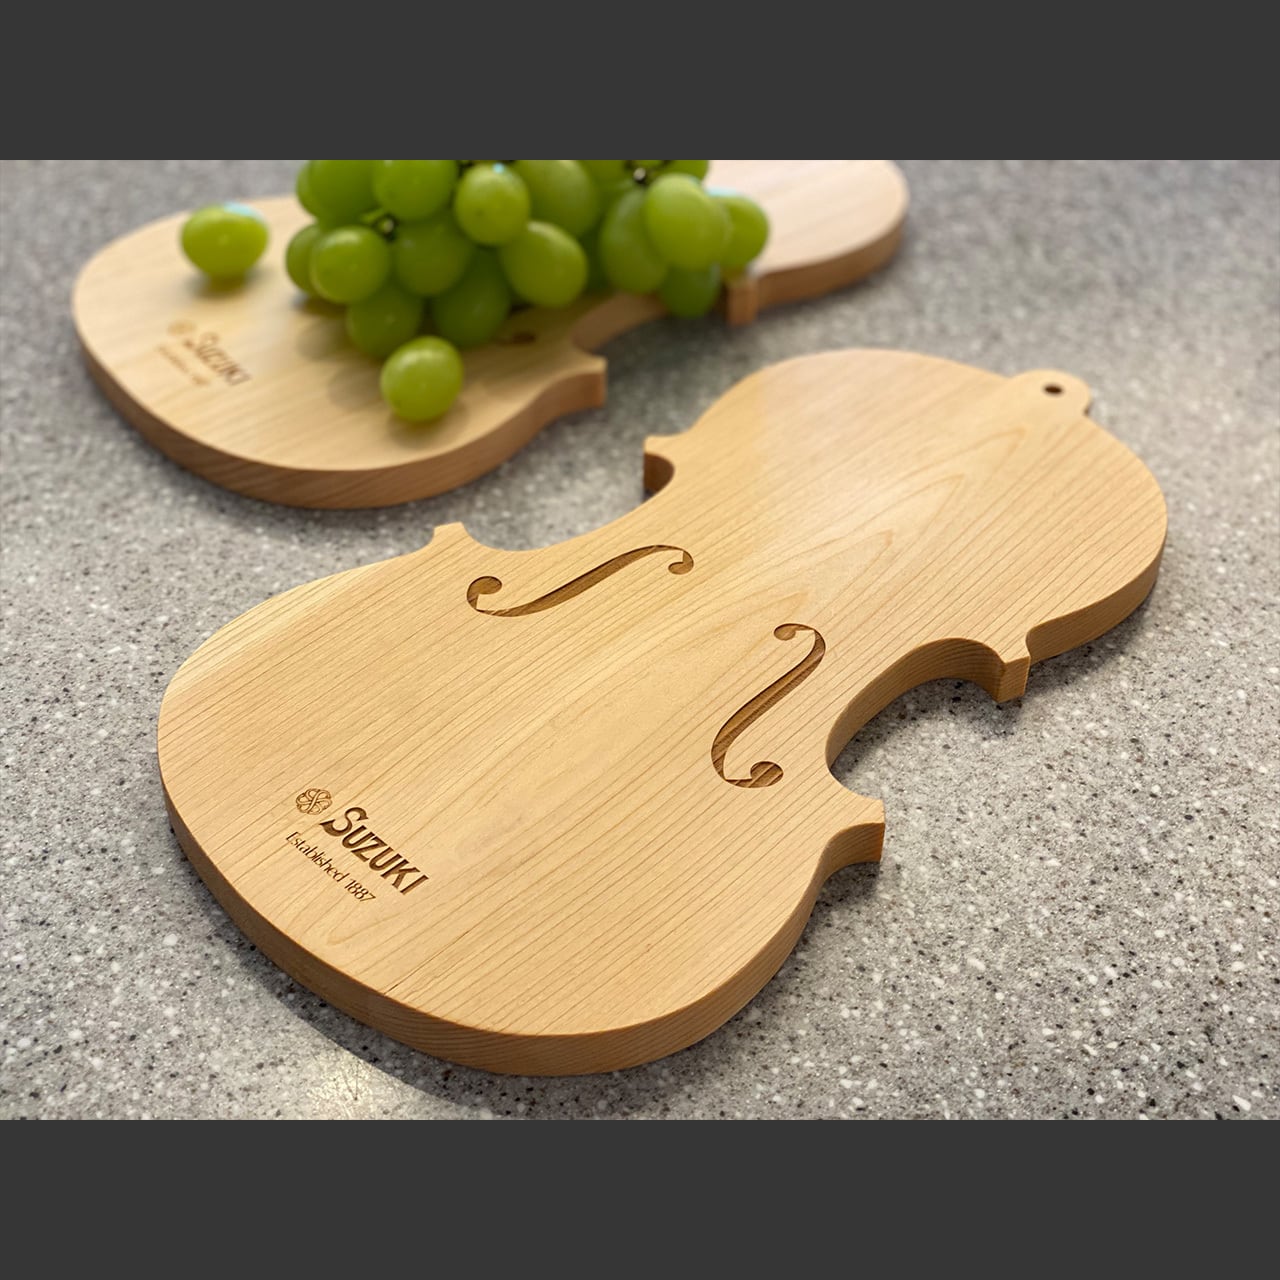 バイオリン職人が製作したカッティングボード | suzukiviolin powered by BASE